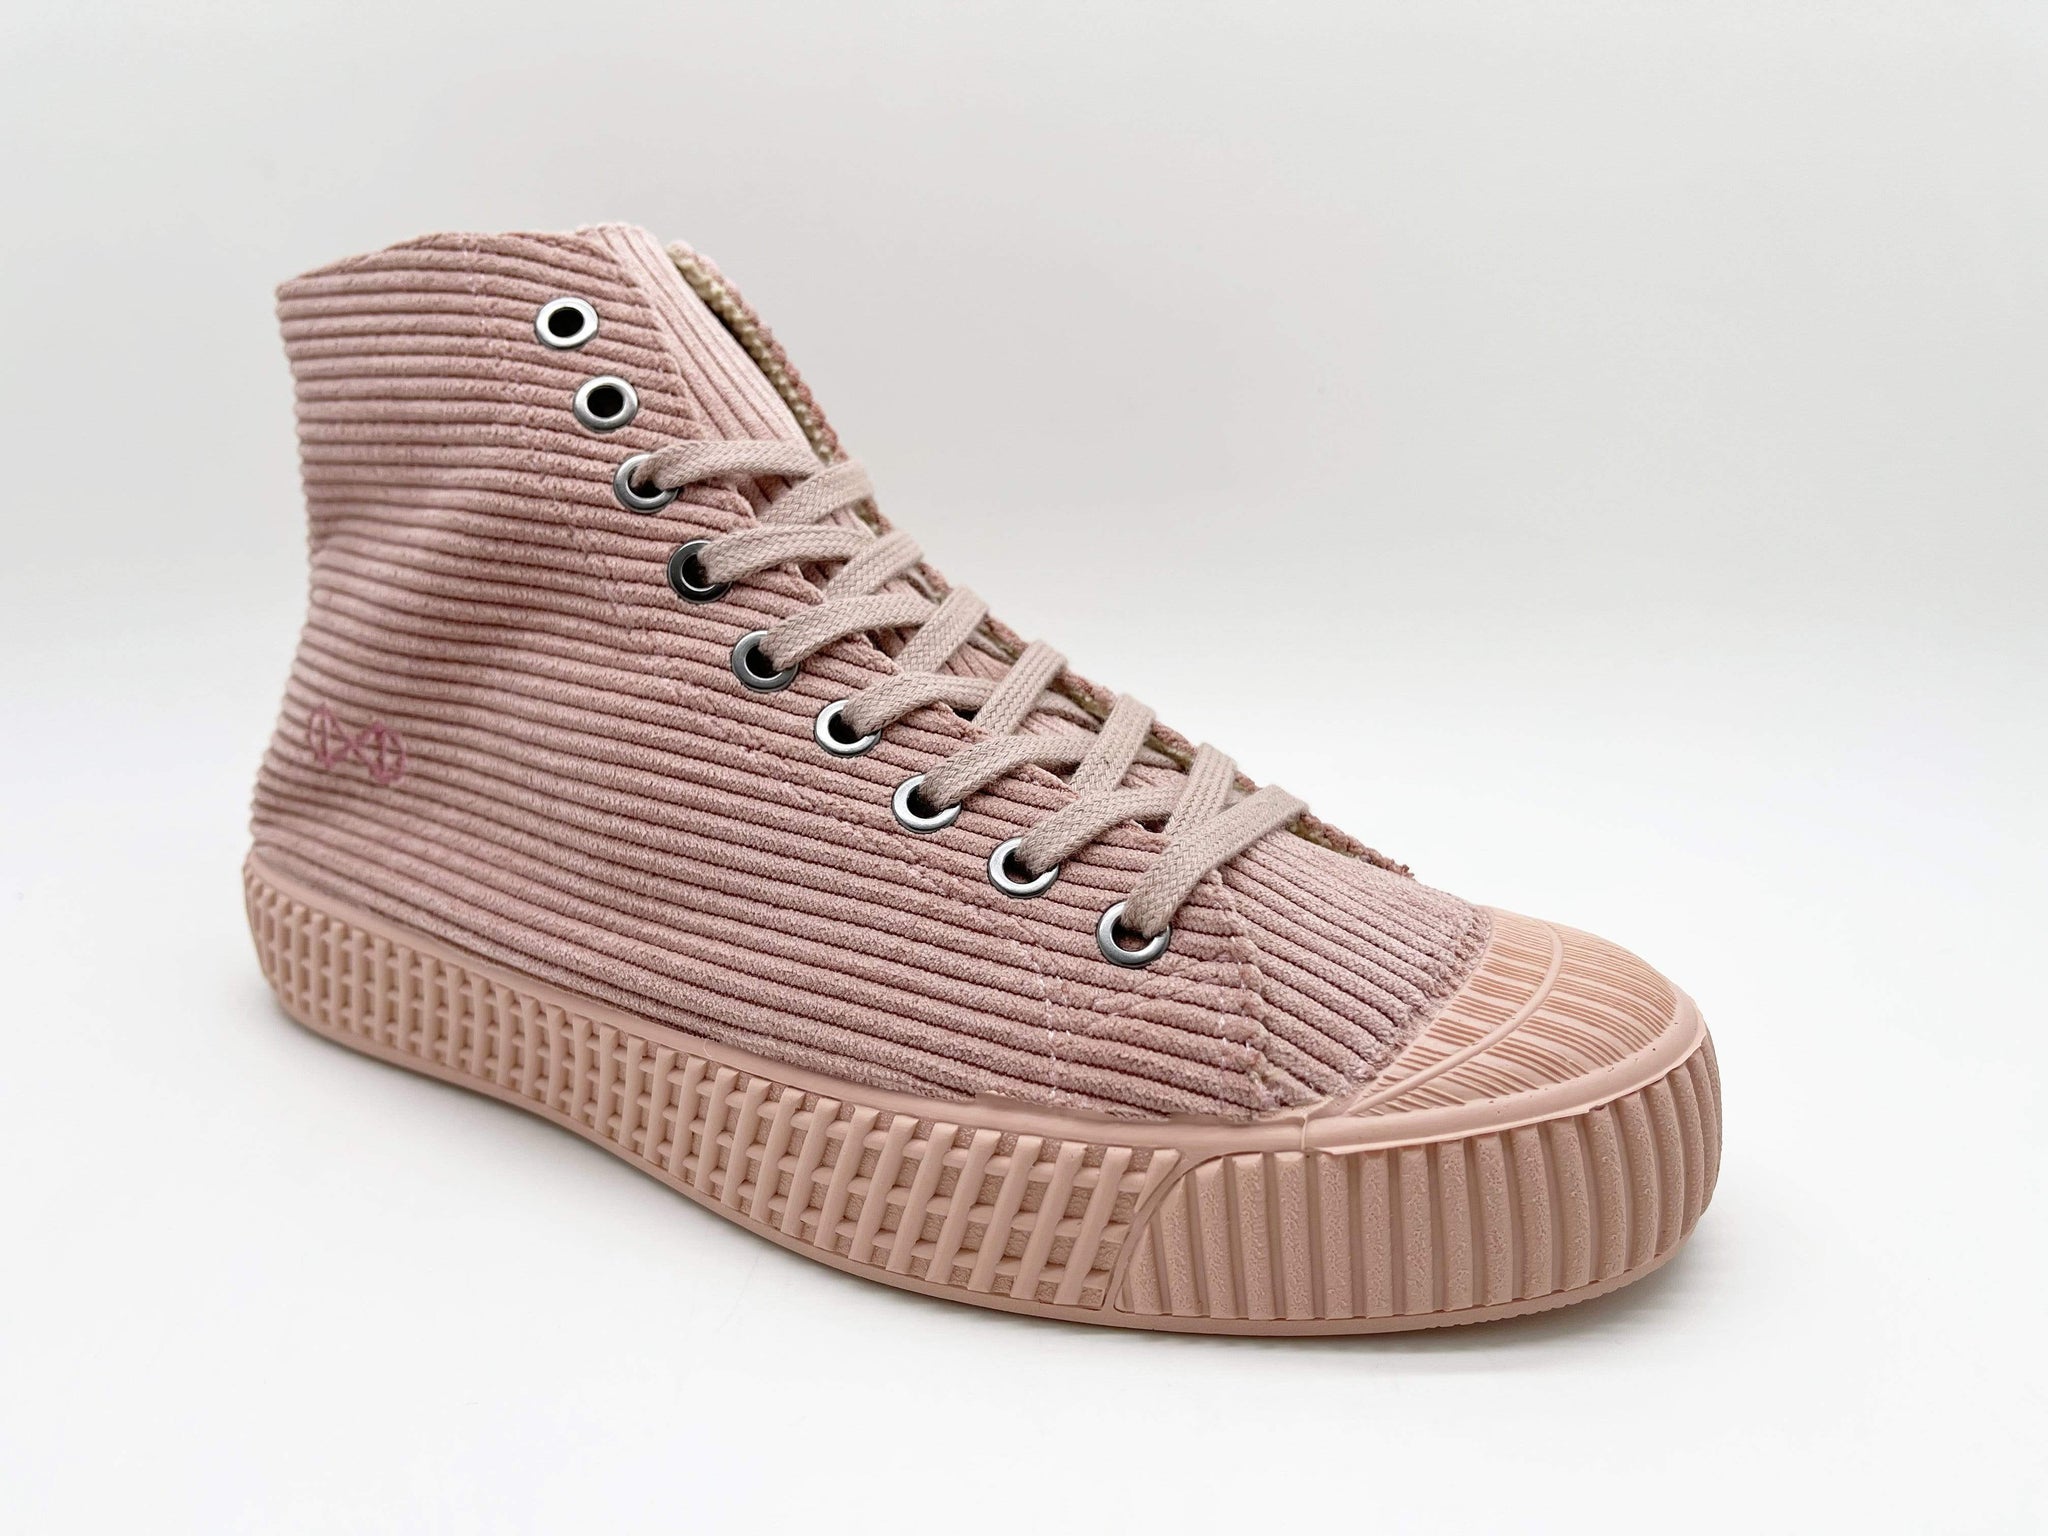 K&T Handels- und Unternehmensberatung GmbH zapatos Vegan Sneakers en Cord, Cork y Sugar caña moda sostenible moda ética